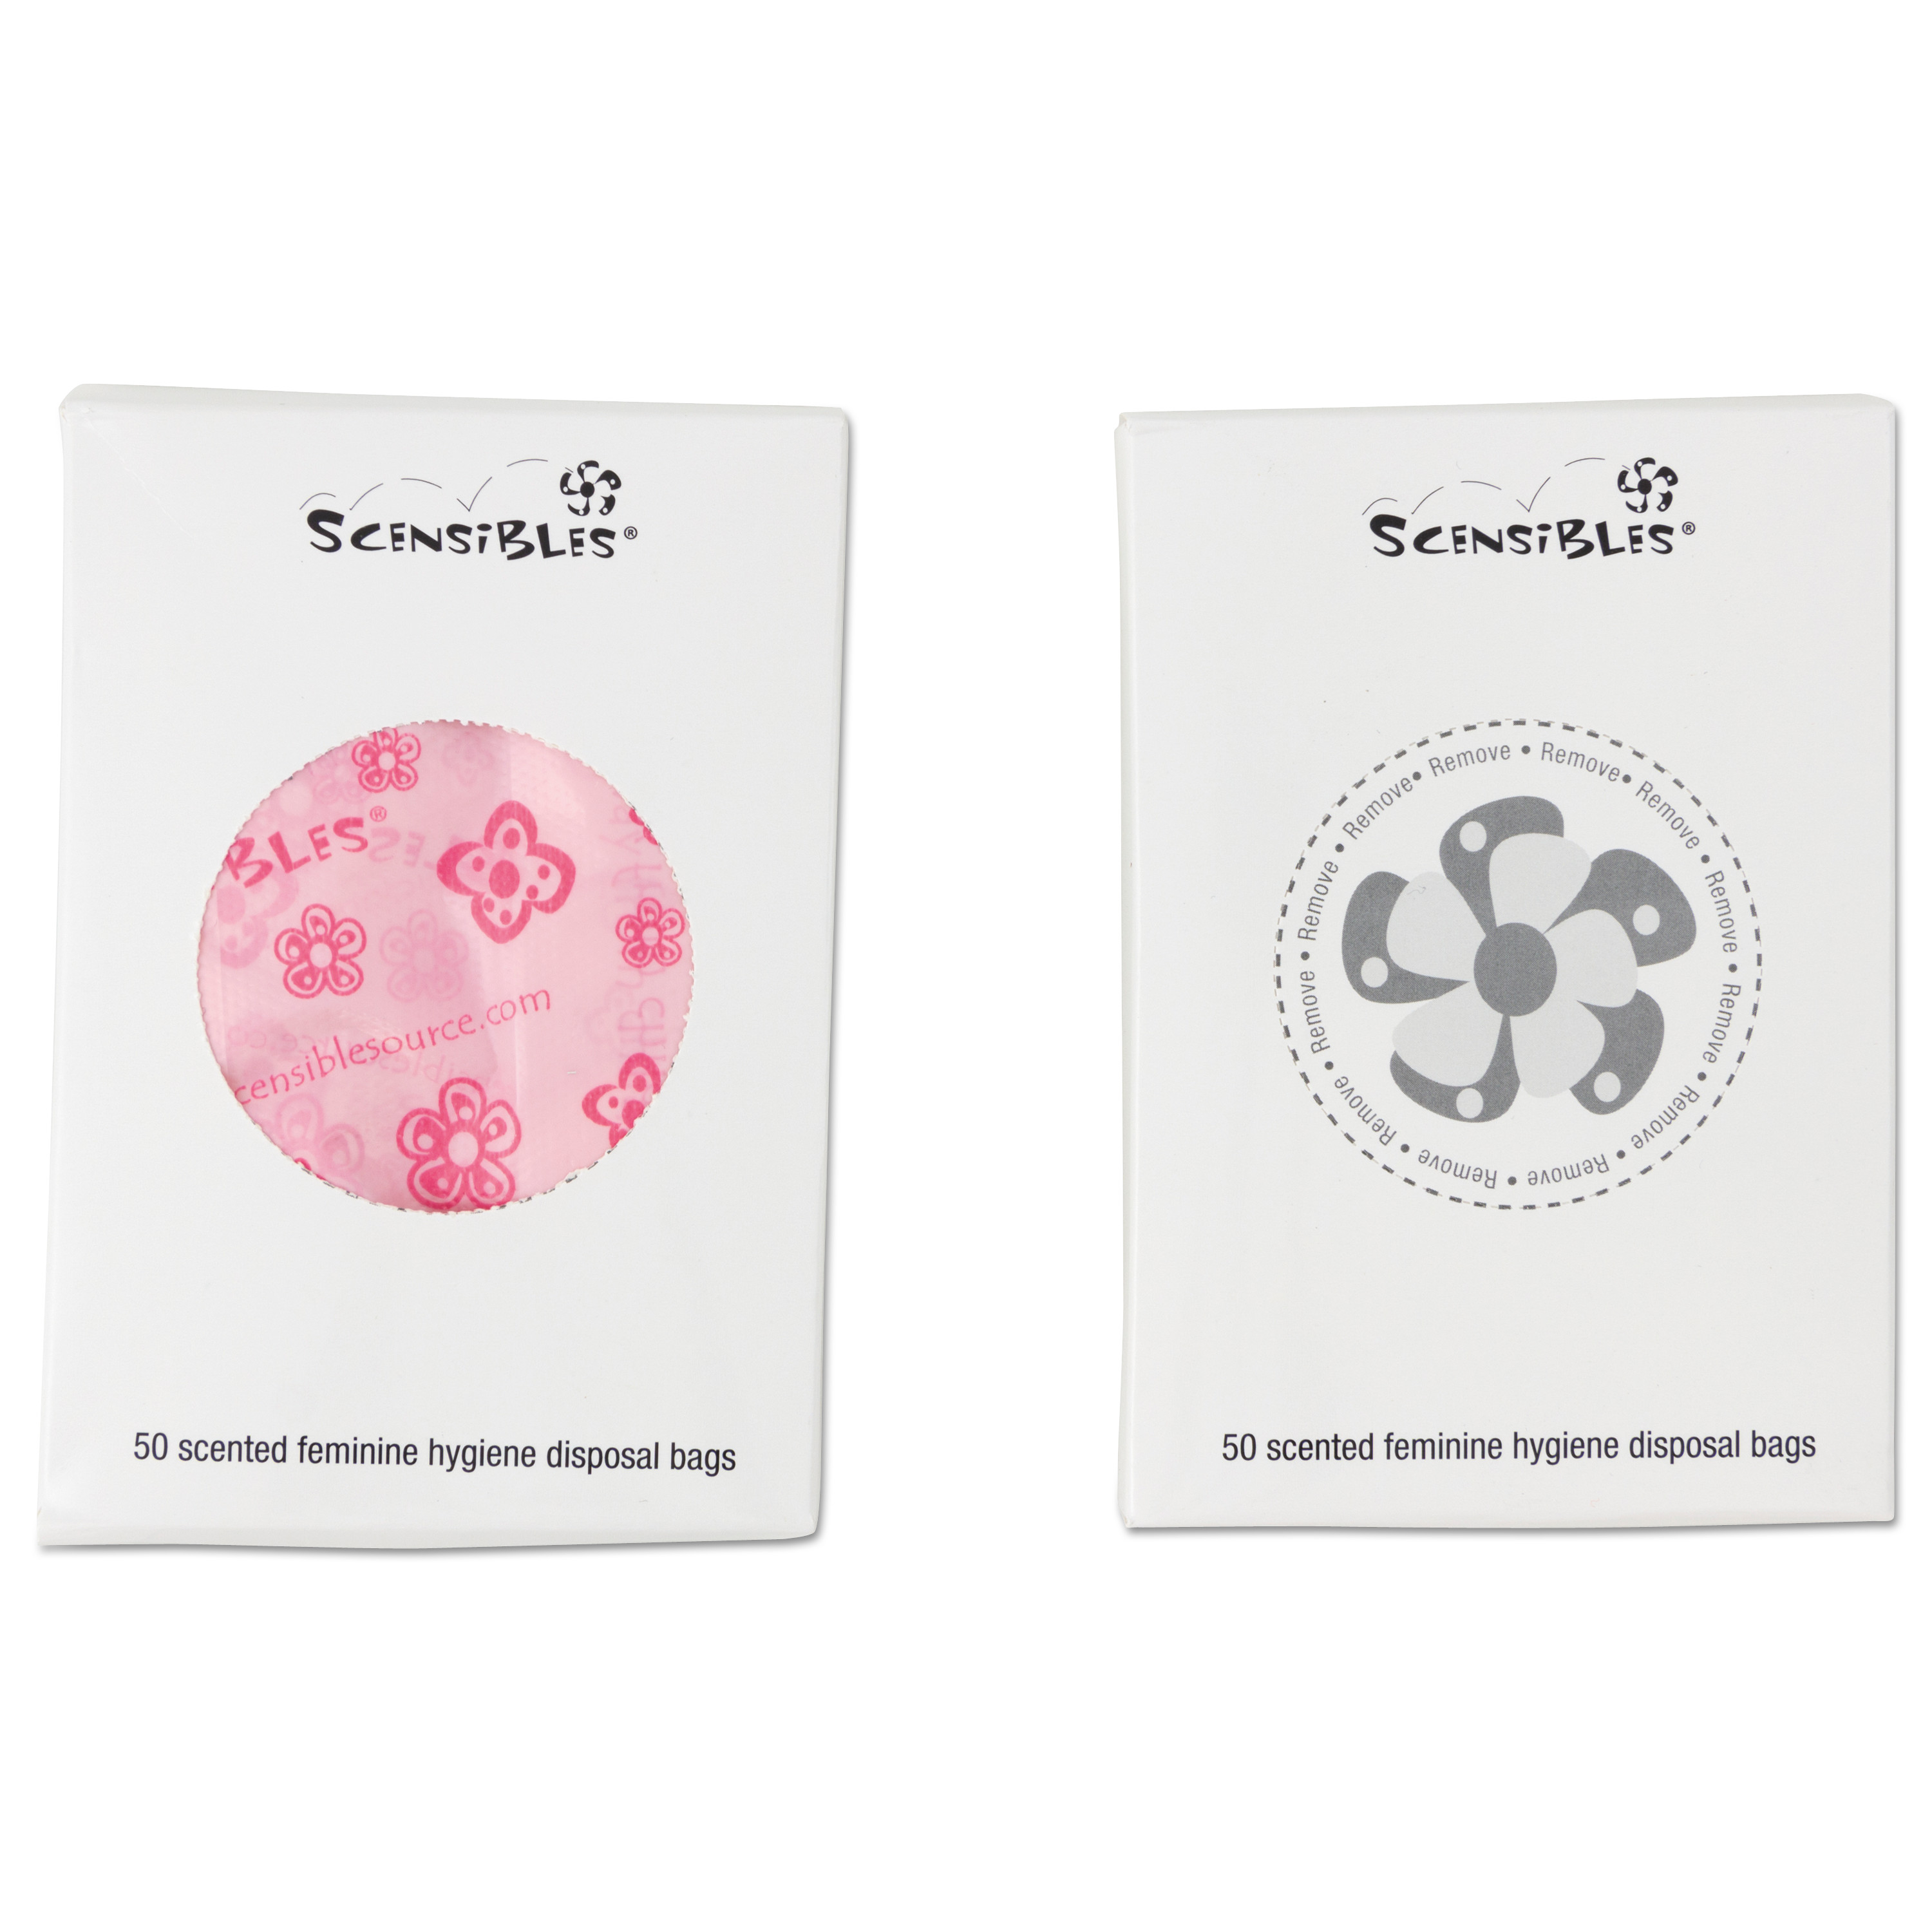  HOSPECO SBX50 Scensibles Personal Disposal Bags, 3.38 x 9.75, Pink, 1,200/Carton (HOSSBX50) 